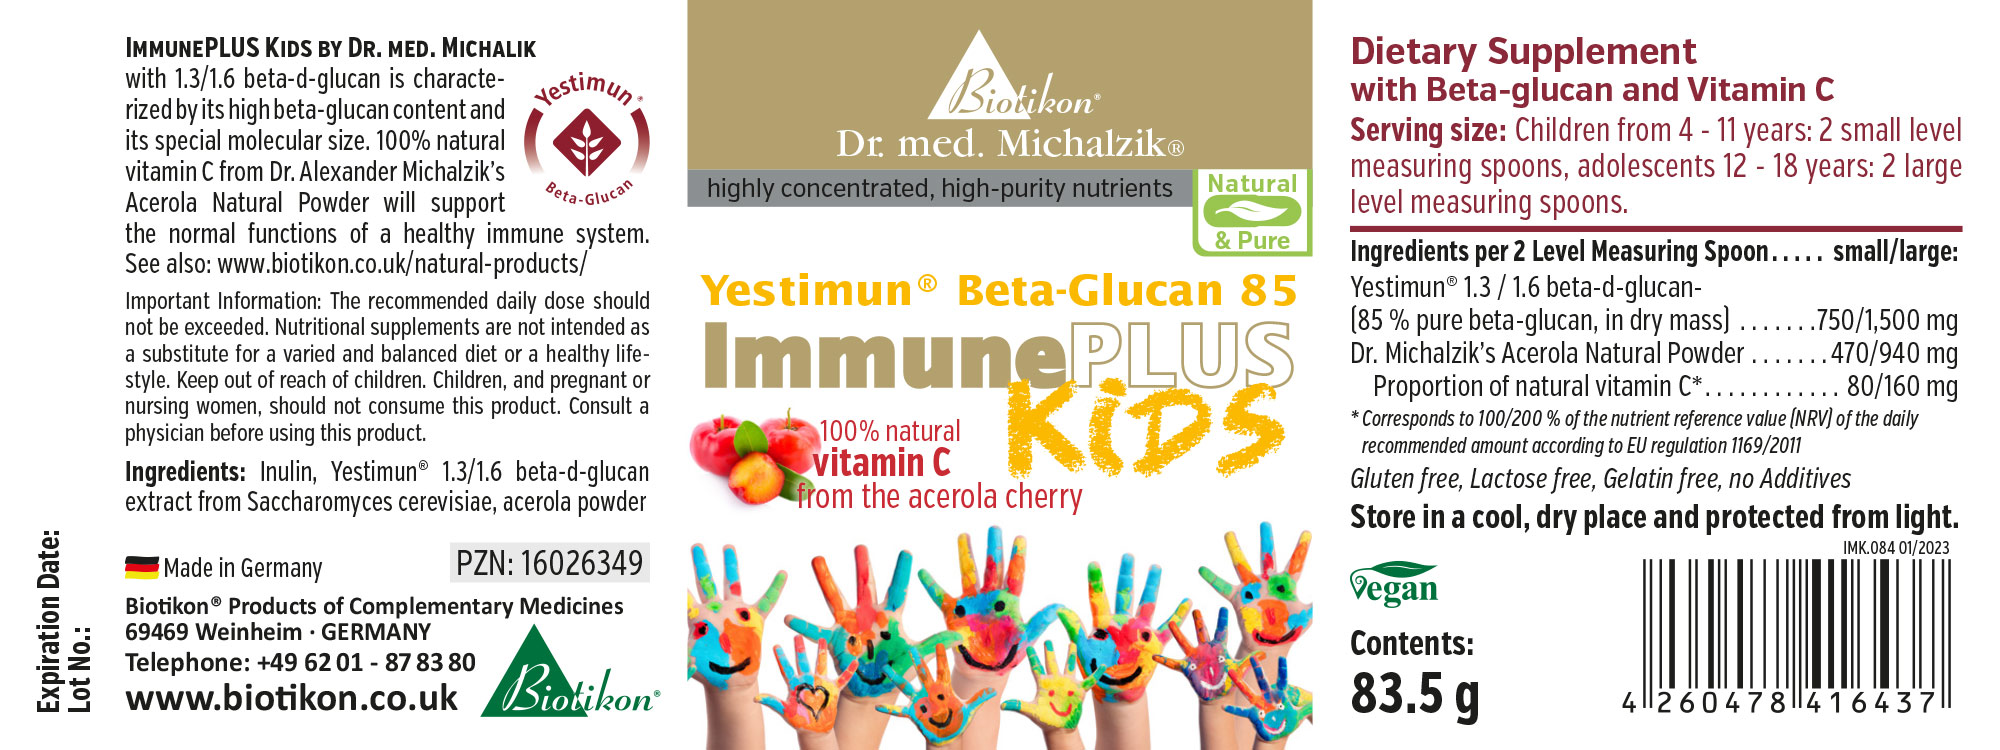 ImmunePLUS Kids